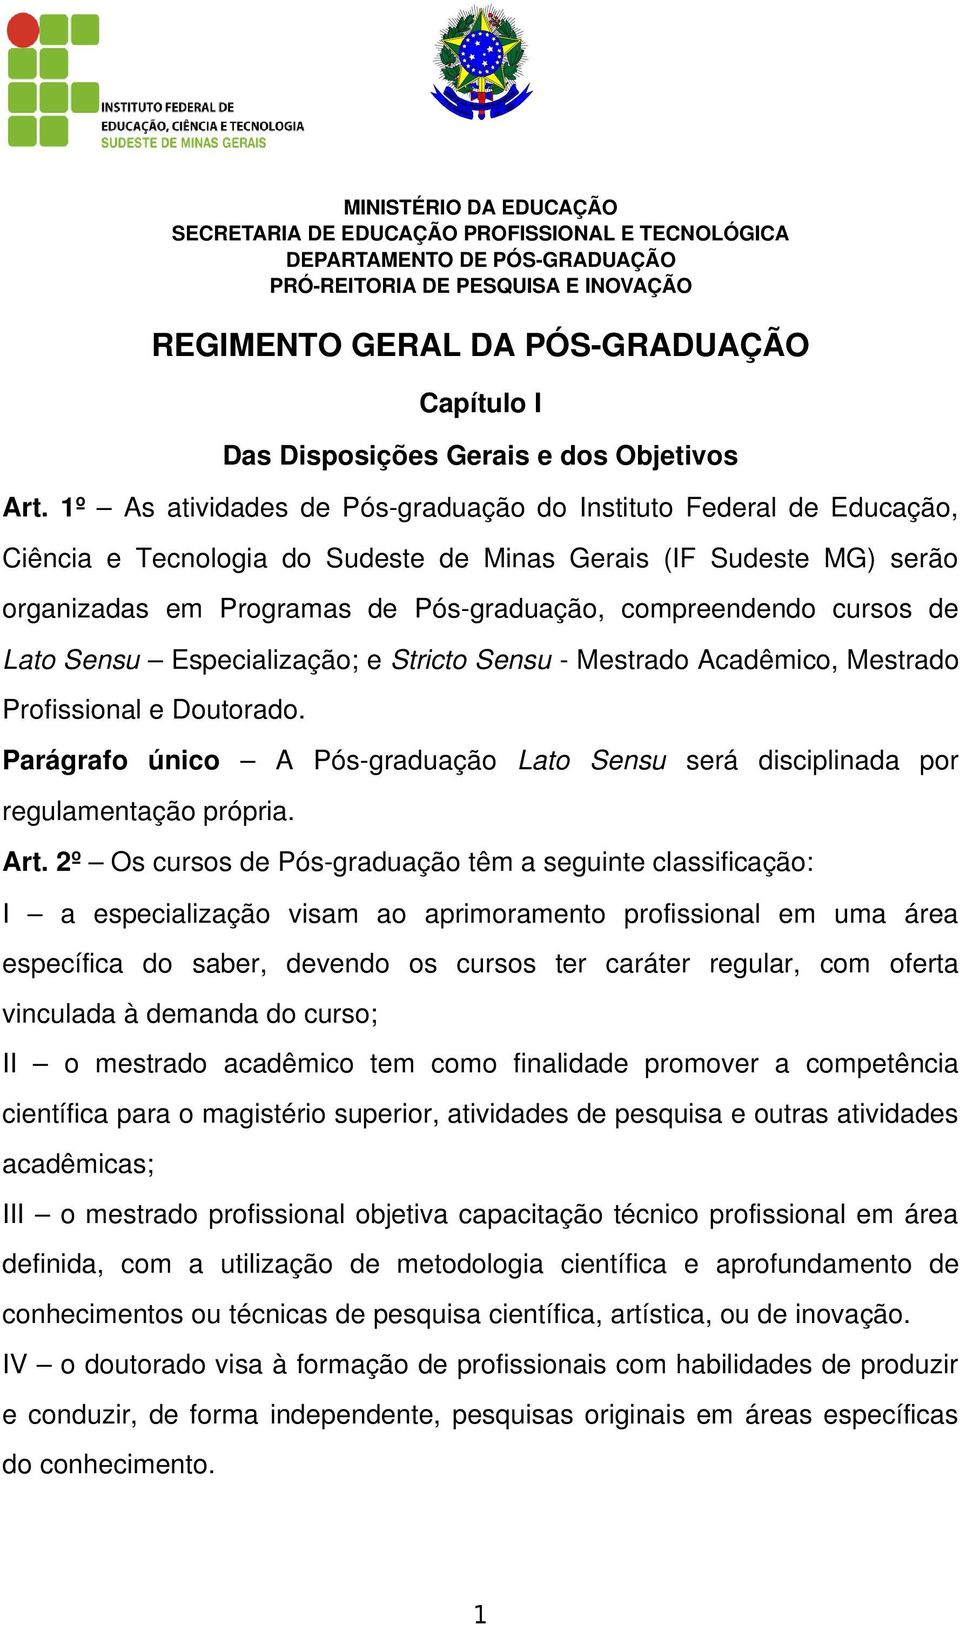 1º As atividades de Pós graduação do Instituto Federal de Educação, Ciência e Tecnologia do Sudeste de Minas Gerais (IF Sudeste MG) serão organizadas em Programas de Pós graduação, compreendendo